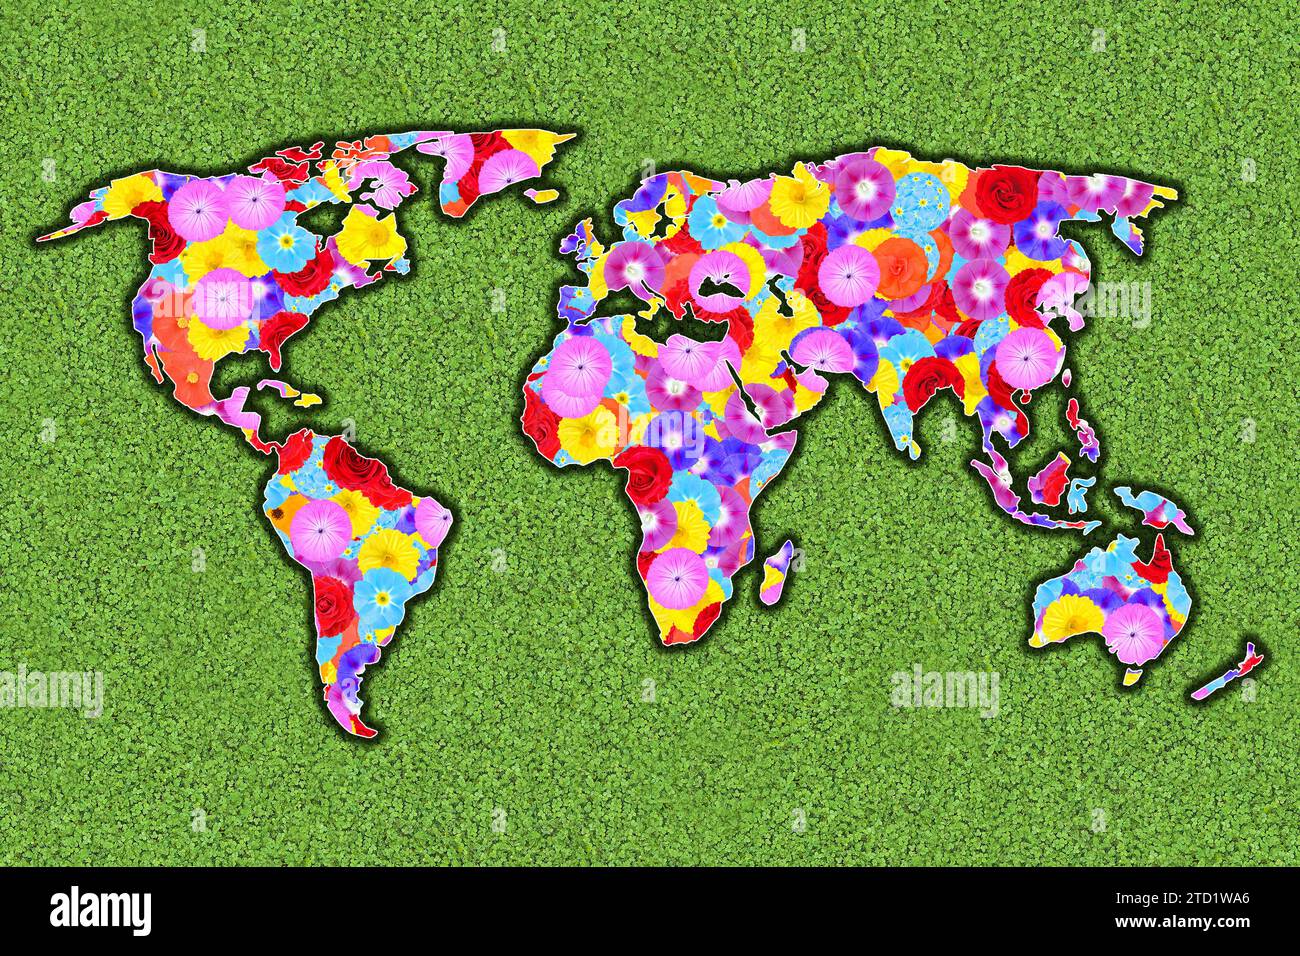 Umriss der Welt, alle Kontinente, mit bunten Blumen auf einer grünen Wiese, Grafik Stockfoto